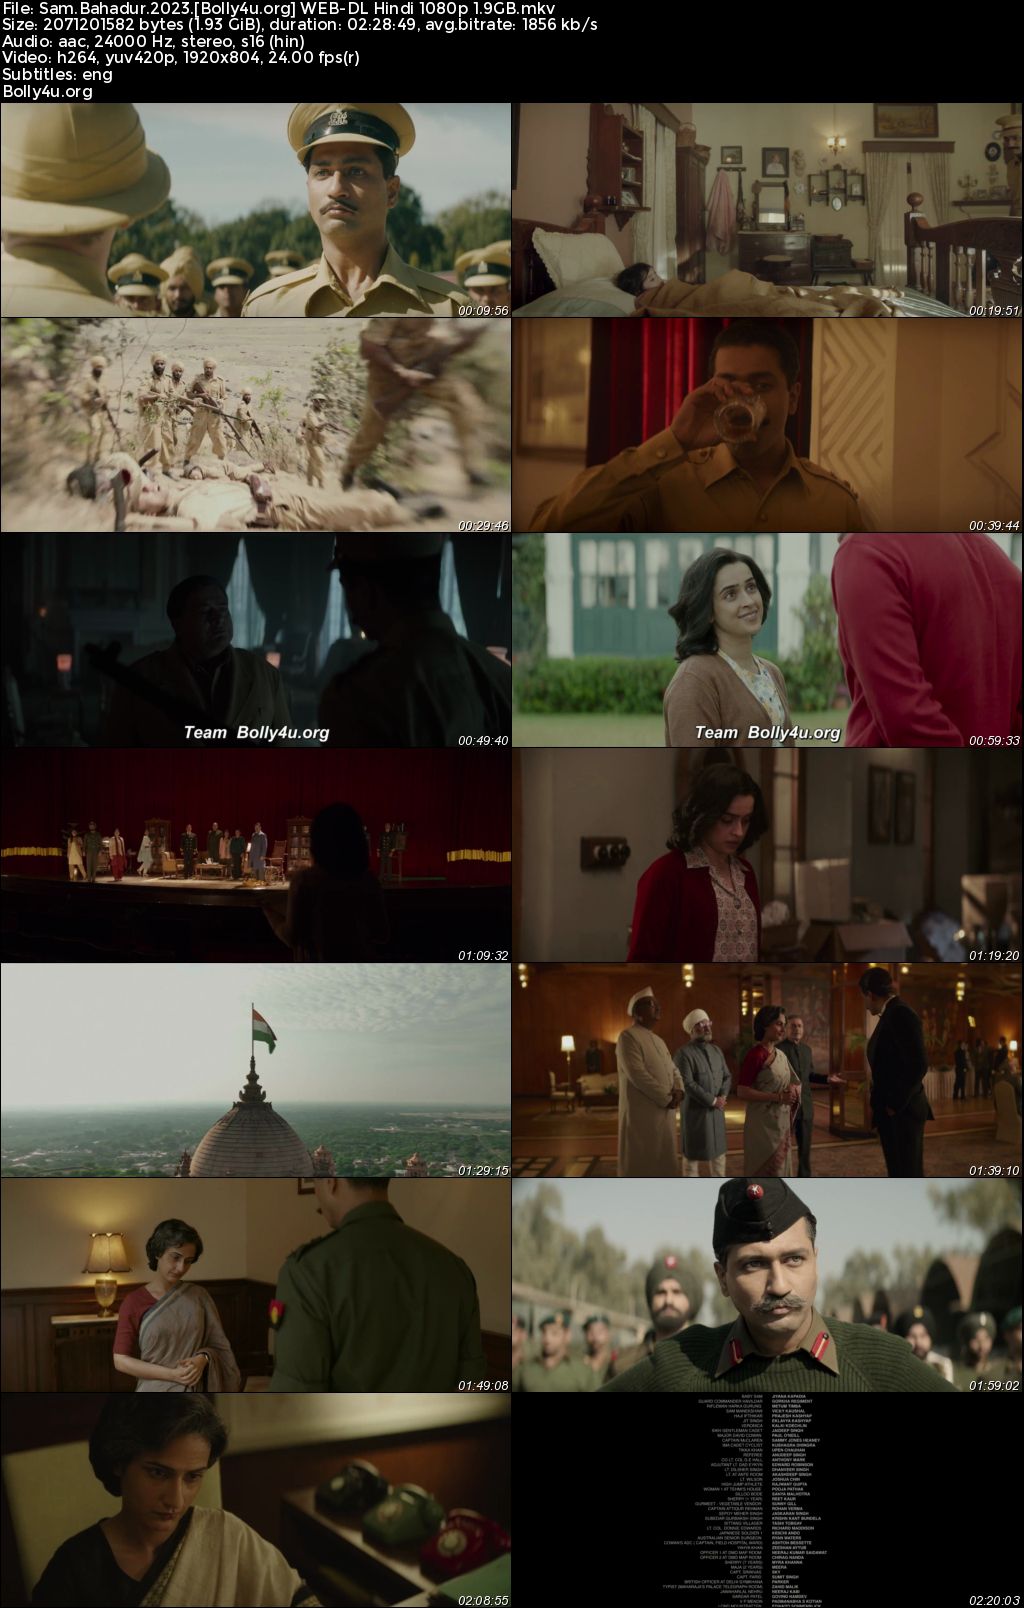 Sam Bahadur 2023 WEB-DL Hindi Full Movie Download 1080p 720p 480p